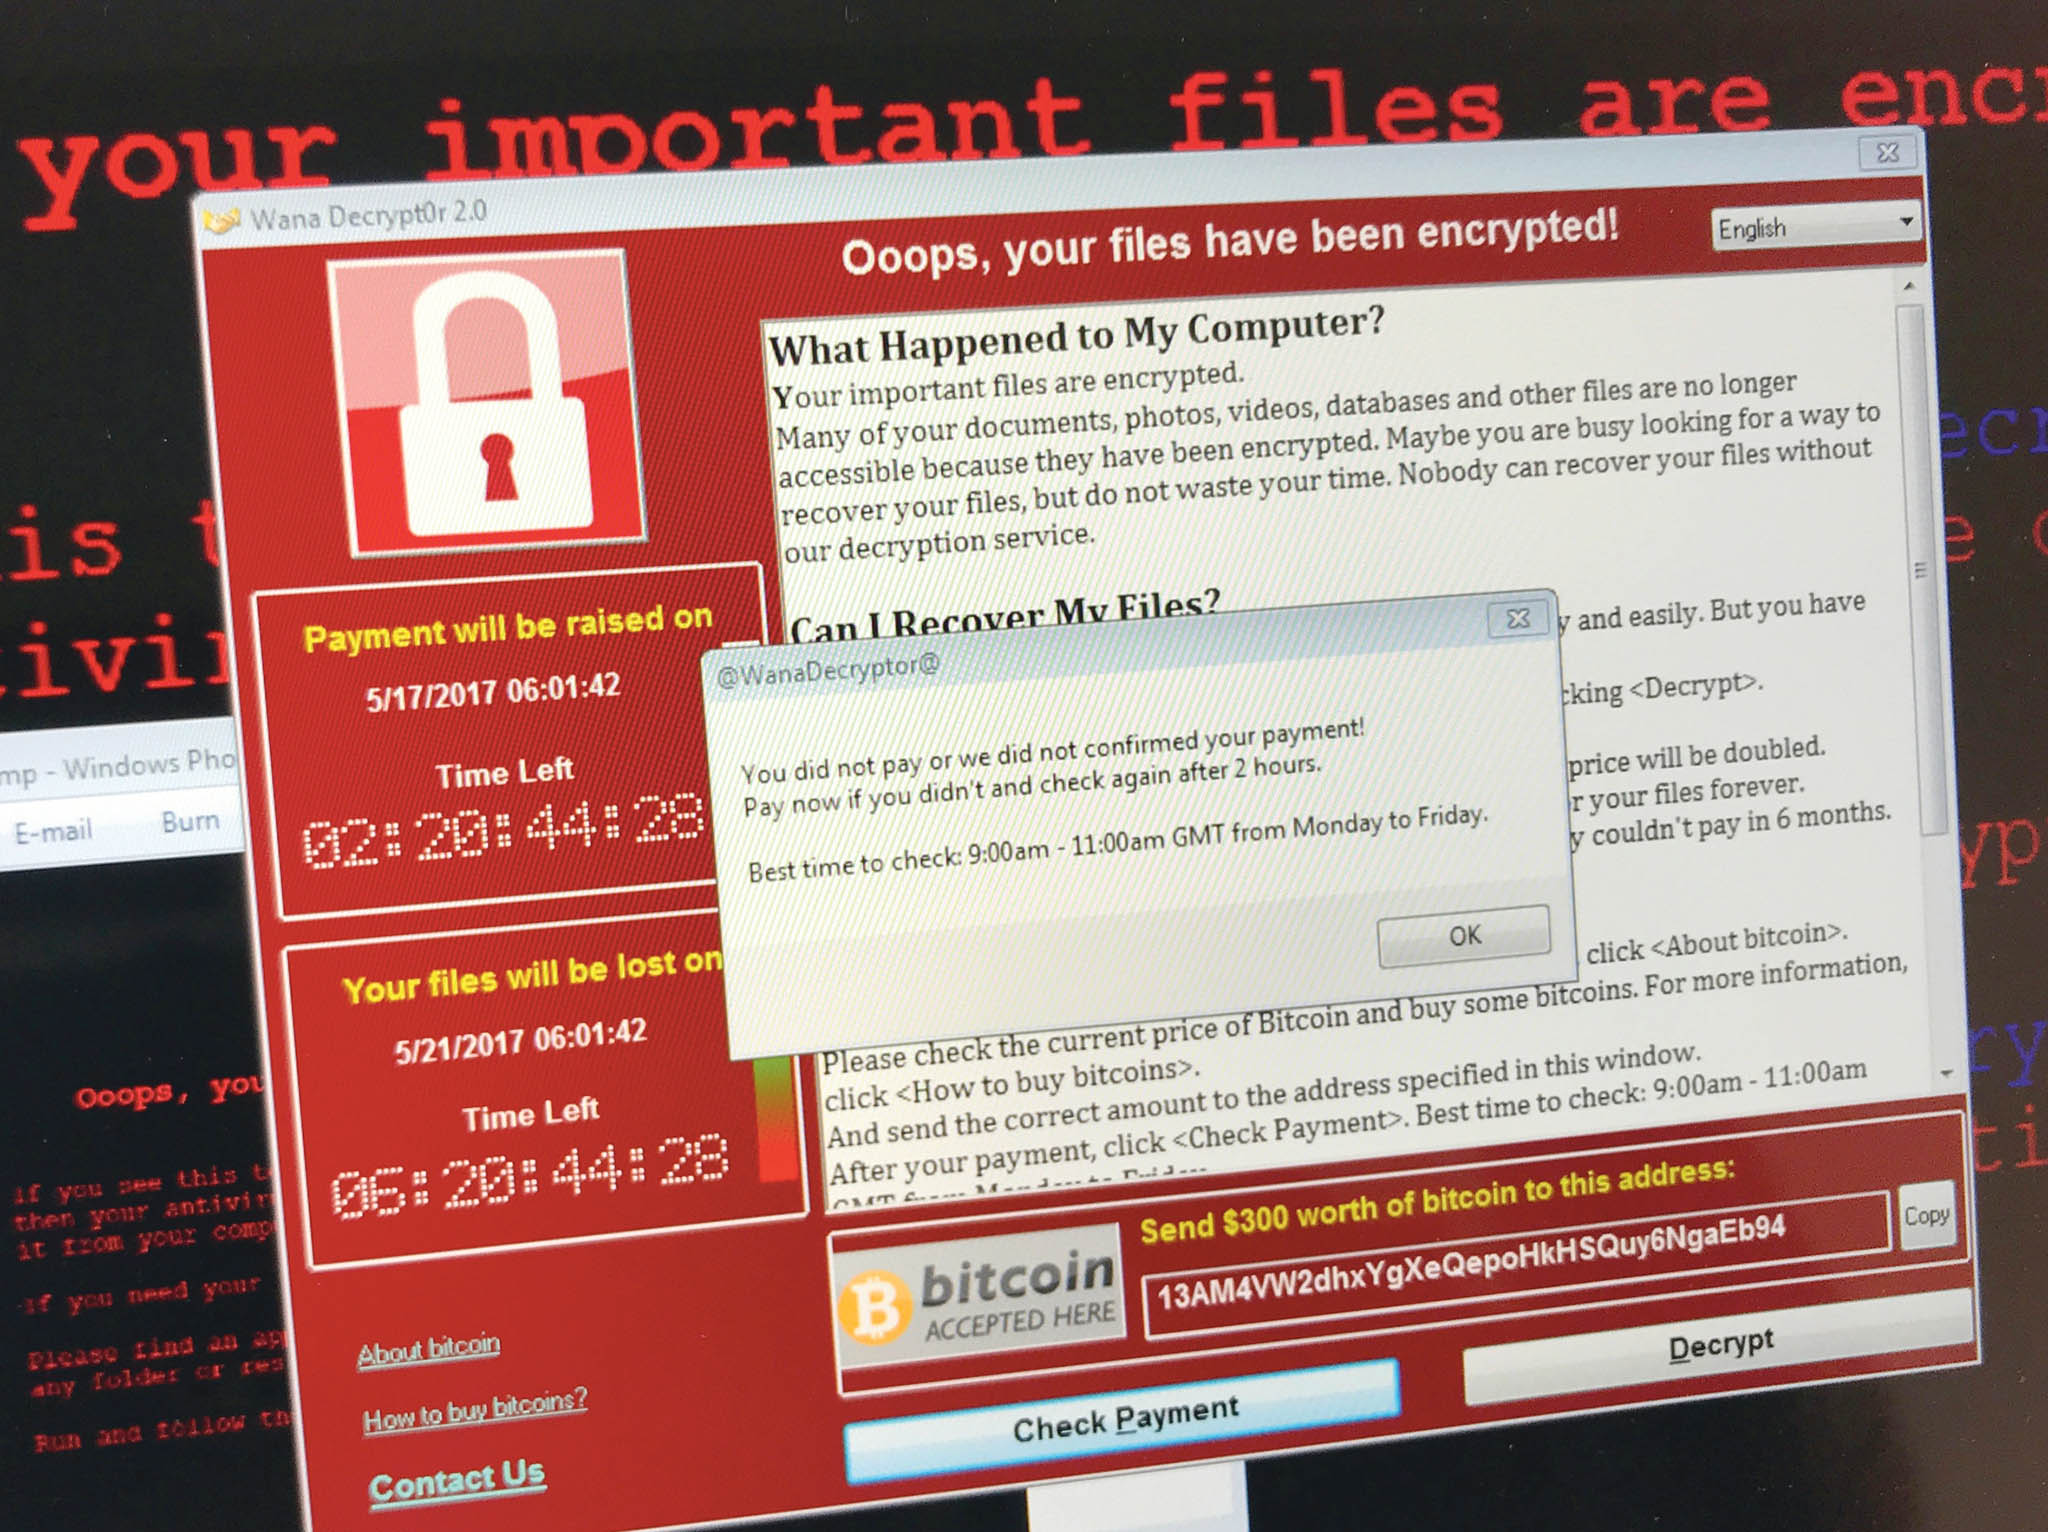 Taková obrazovka vítala uživatele počítače s operačním systémem Microsoft Windows, který byl napaden ransomwarem WannaCry. Výsledkem byla zašifrovaná data na pevném disku. Za dešifrování útočníci žádali platbu v bitcoinech.